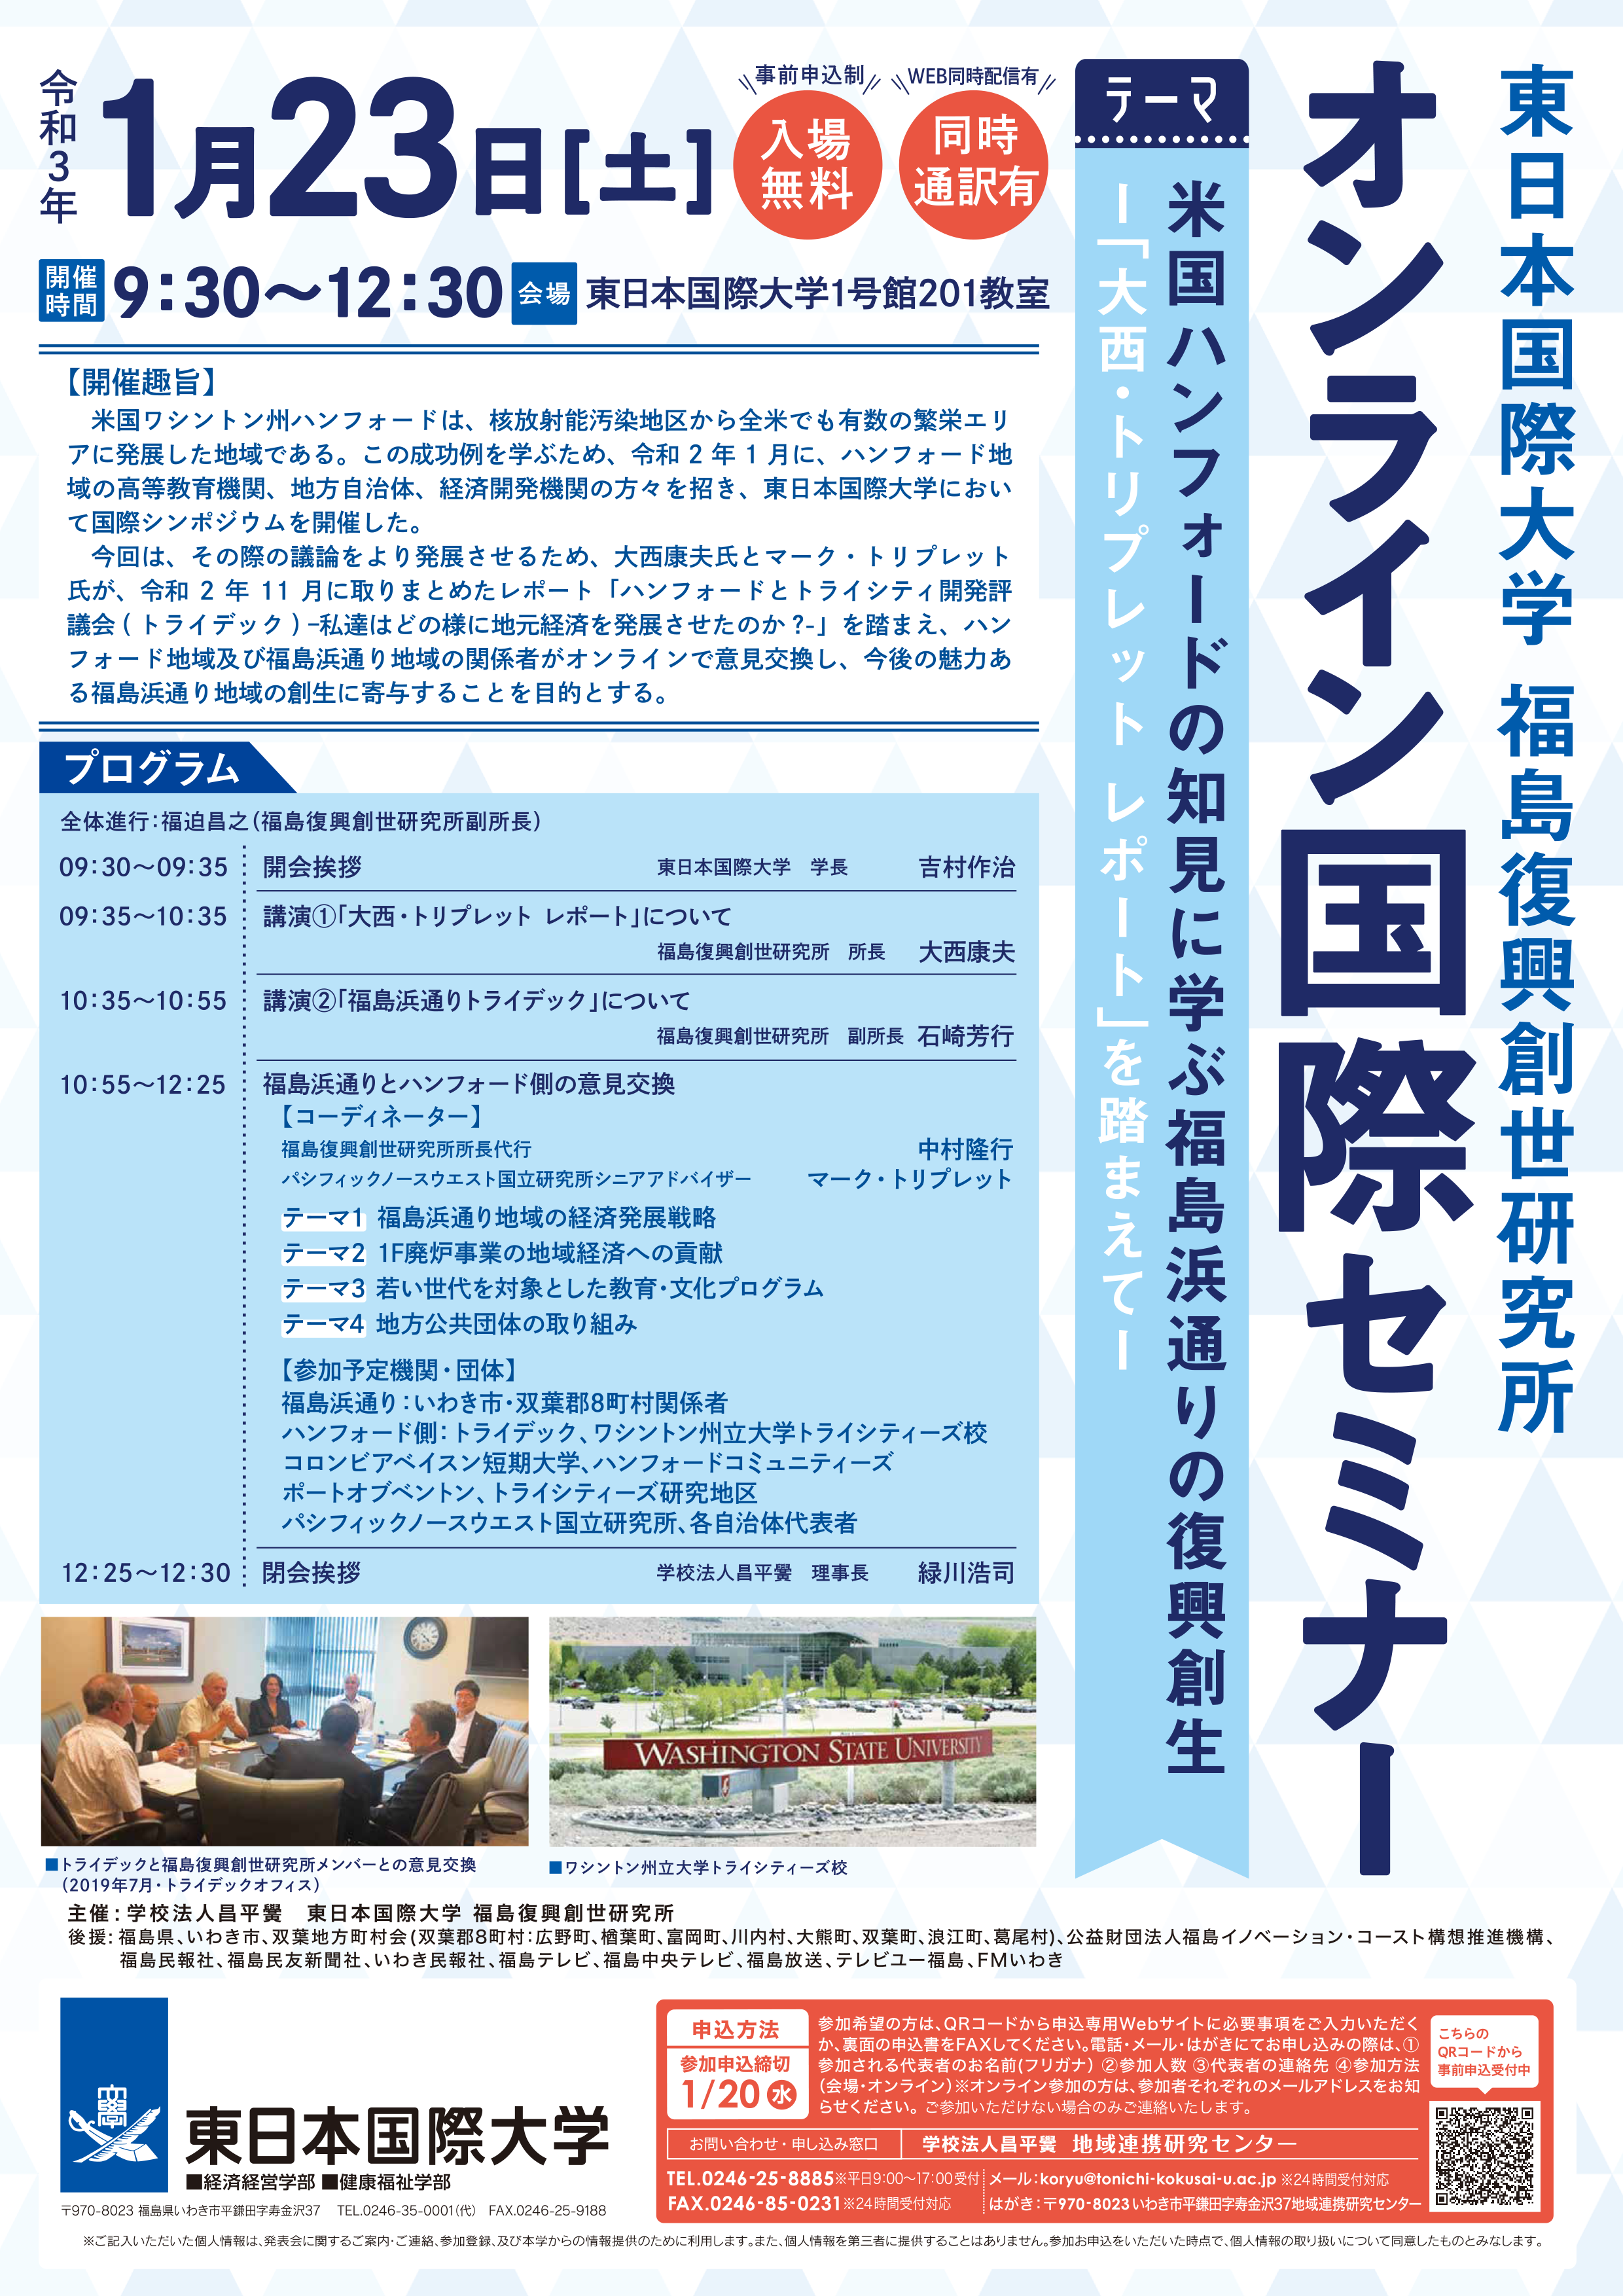 東日本国際大学福島復興創世研究所が1月23日にオンライン国際セミナーを開催 -- 米国ハンフォードと福島浜通りの関係者がオンラインで意見交換